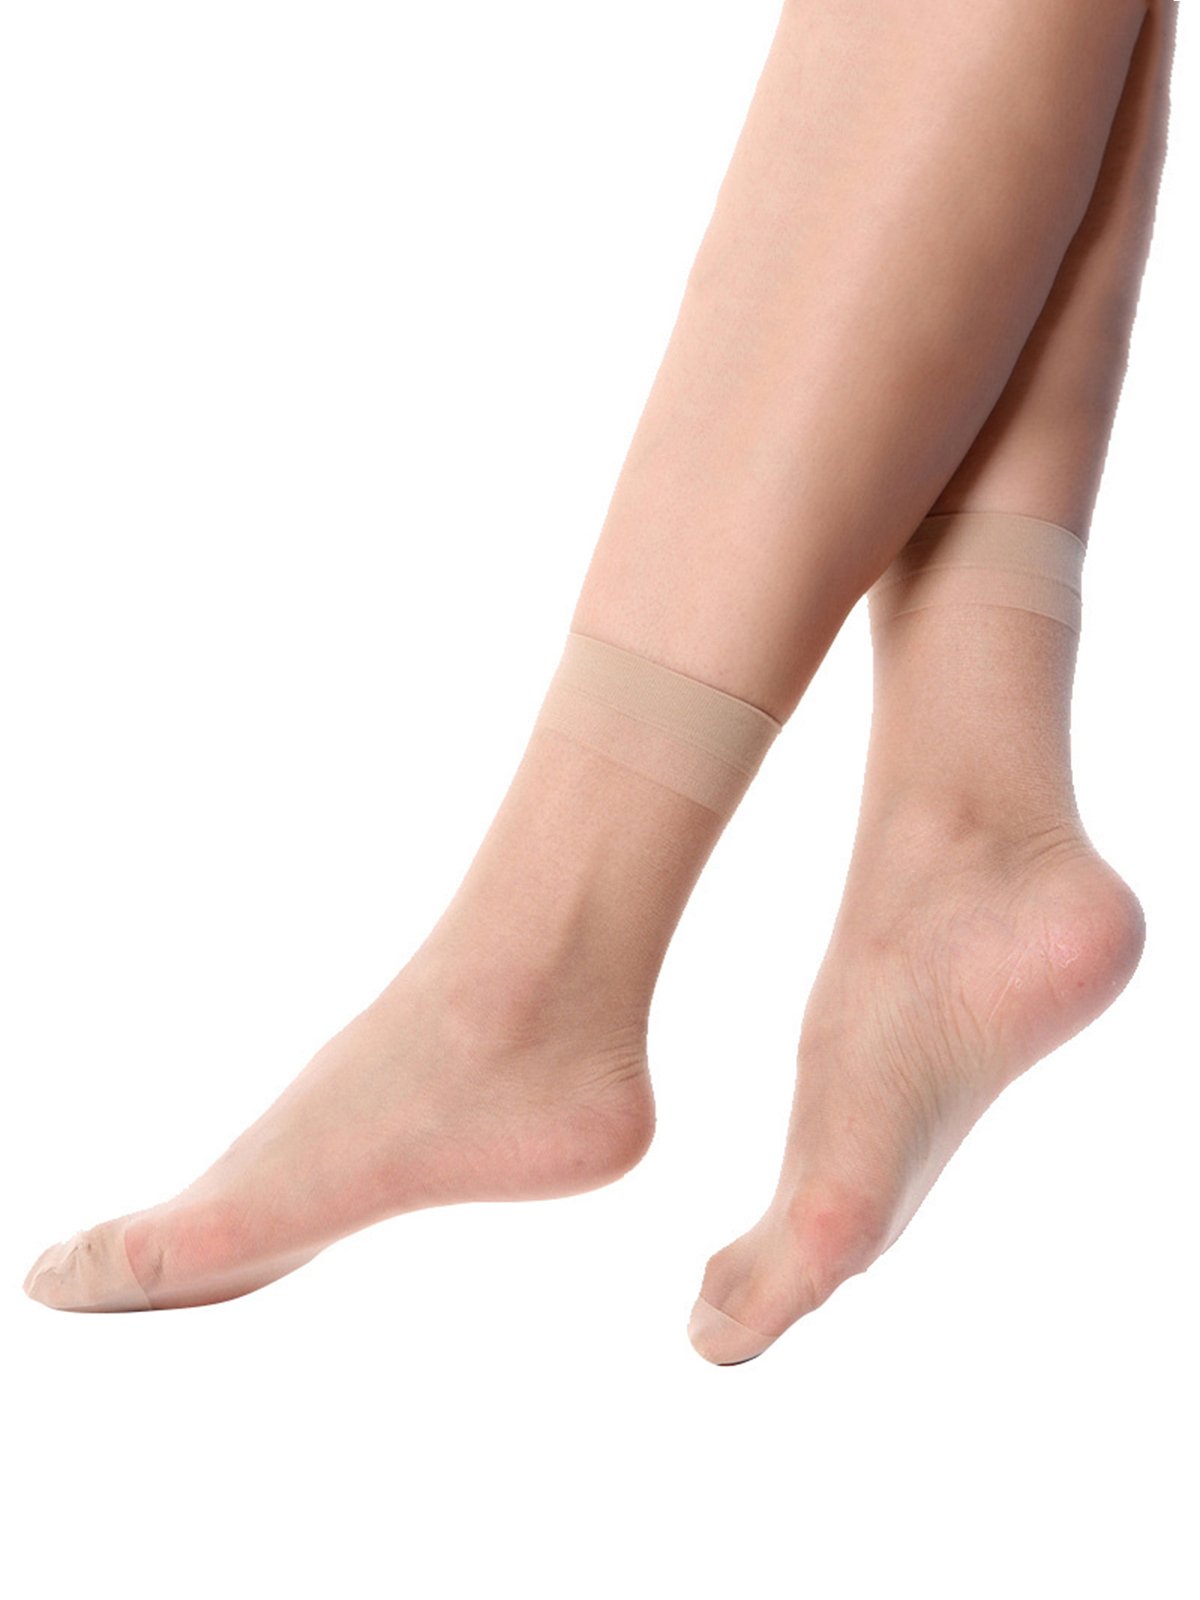 1 pair Women Minimalist Silk socks